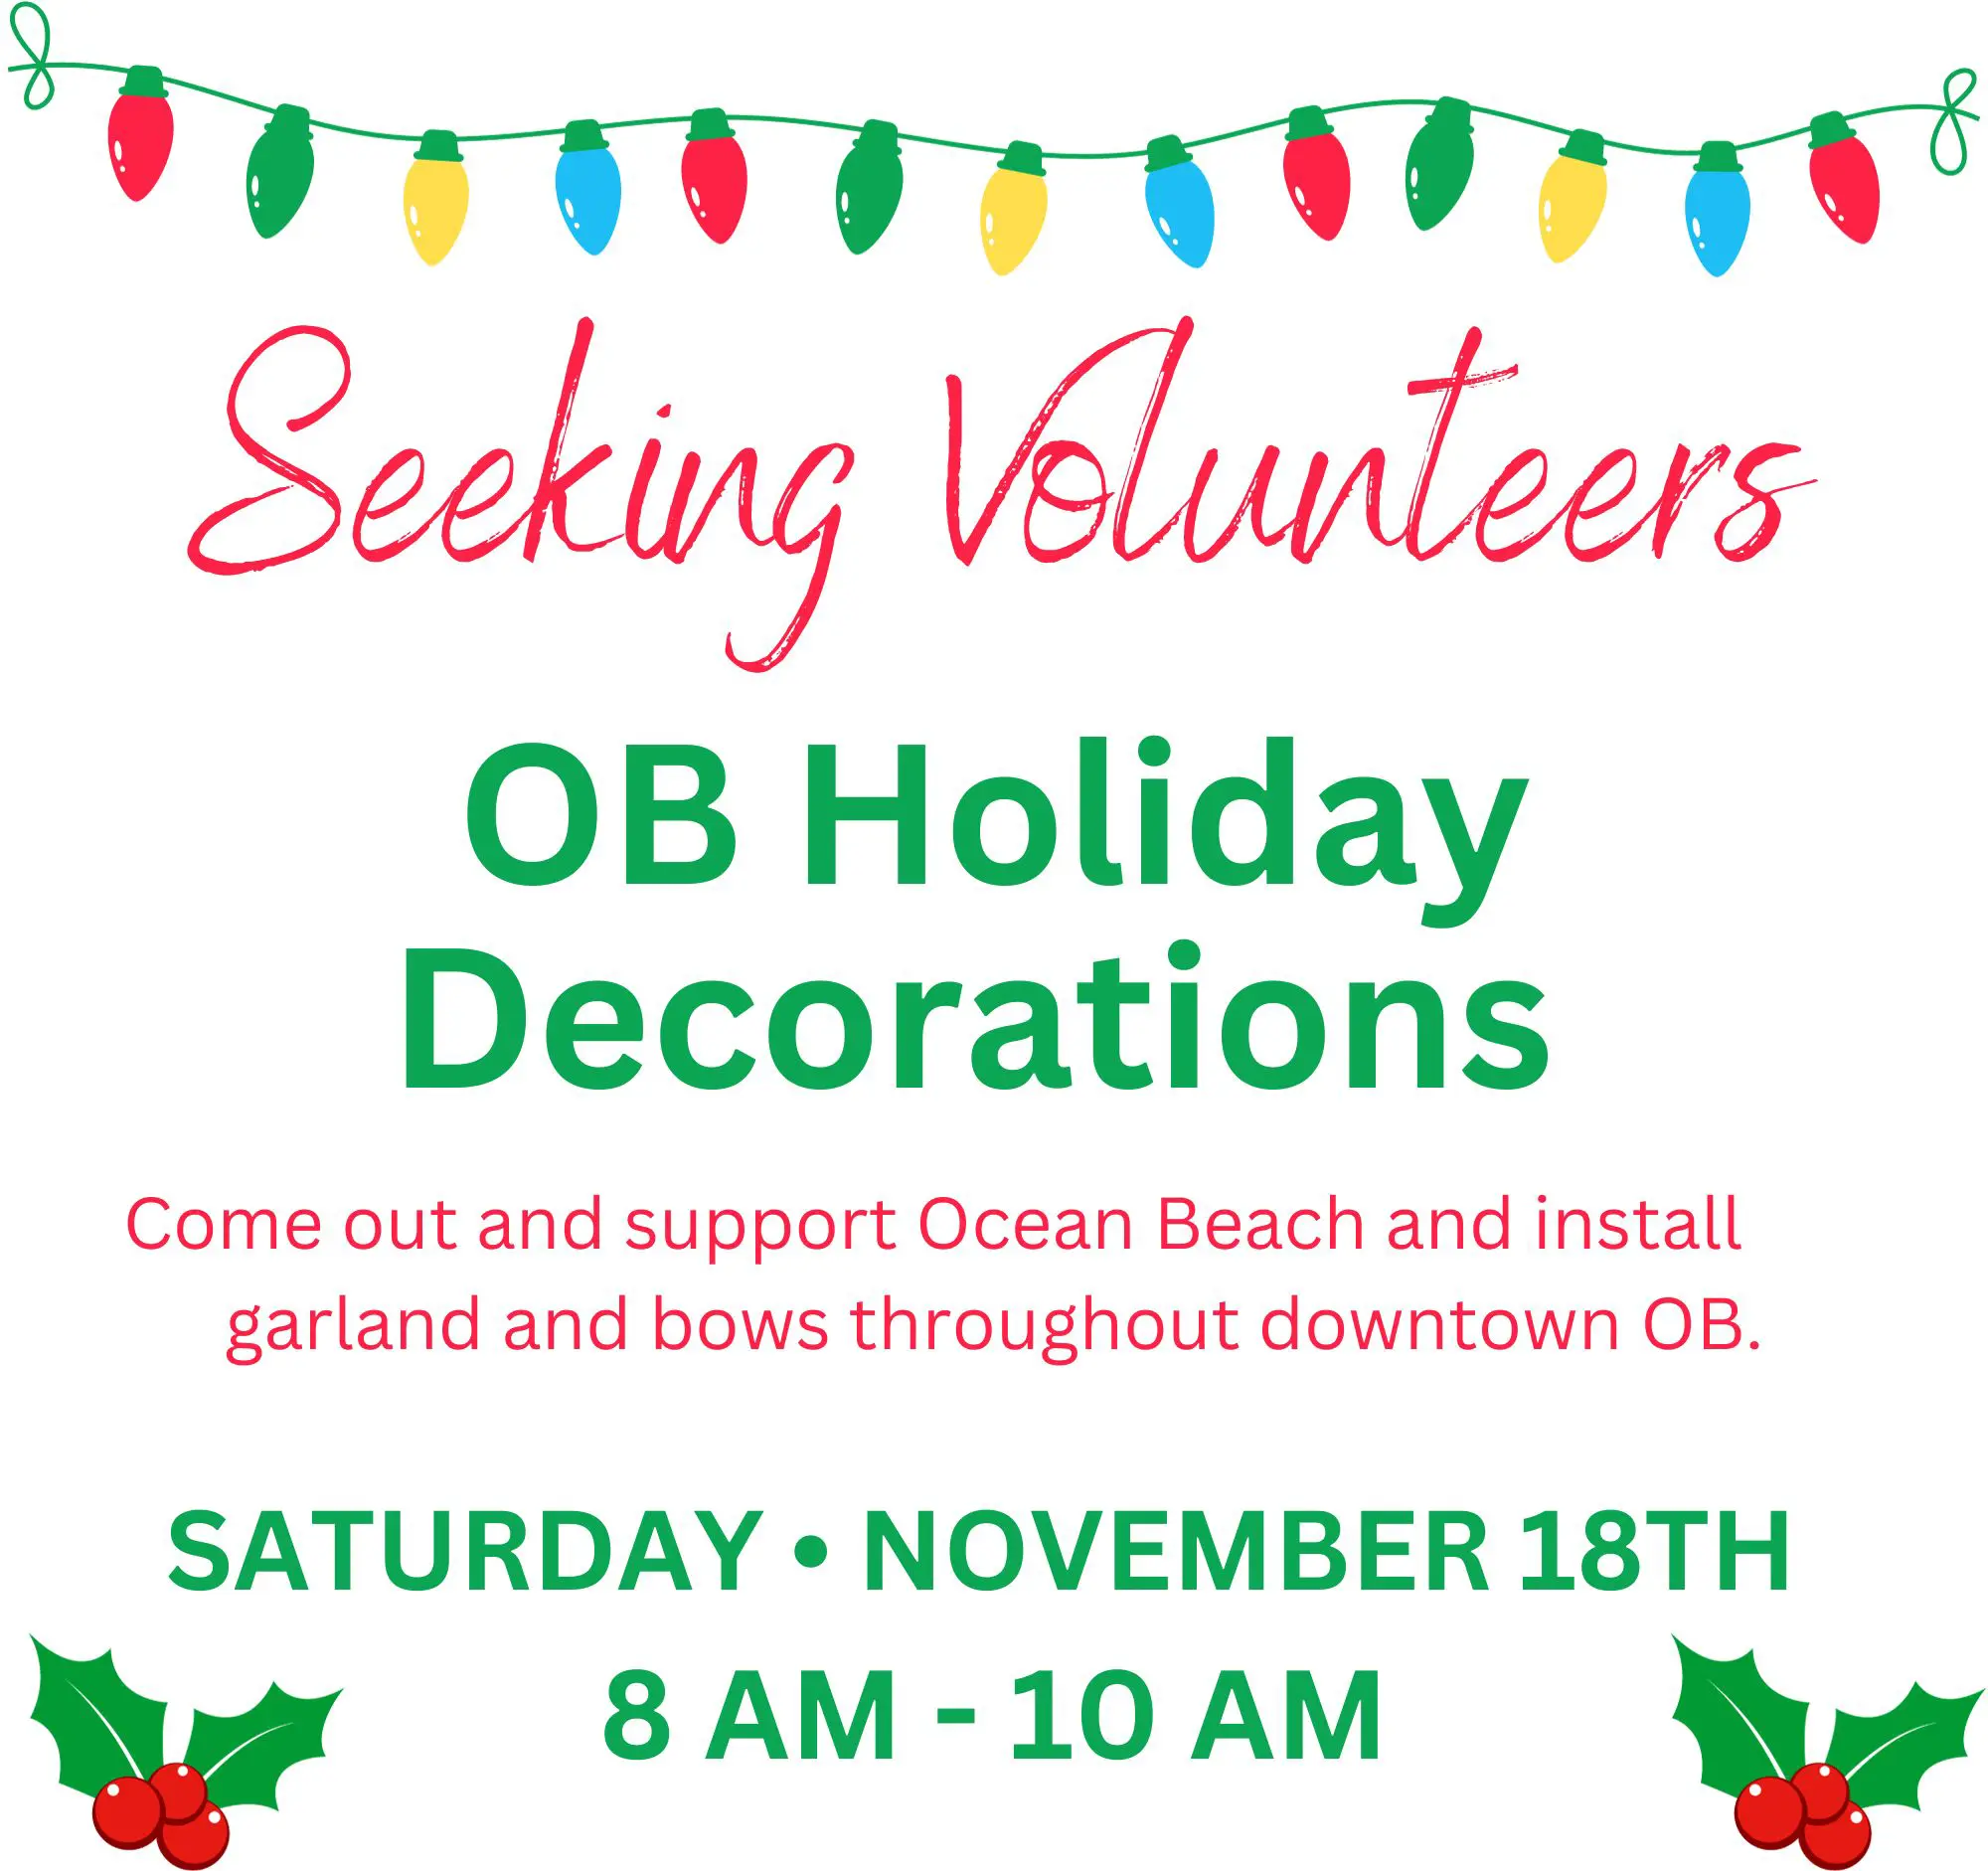 Seeking Holiday Volunteers